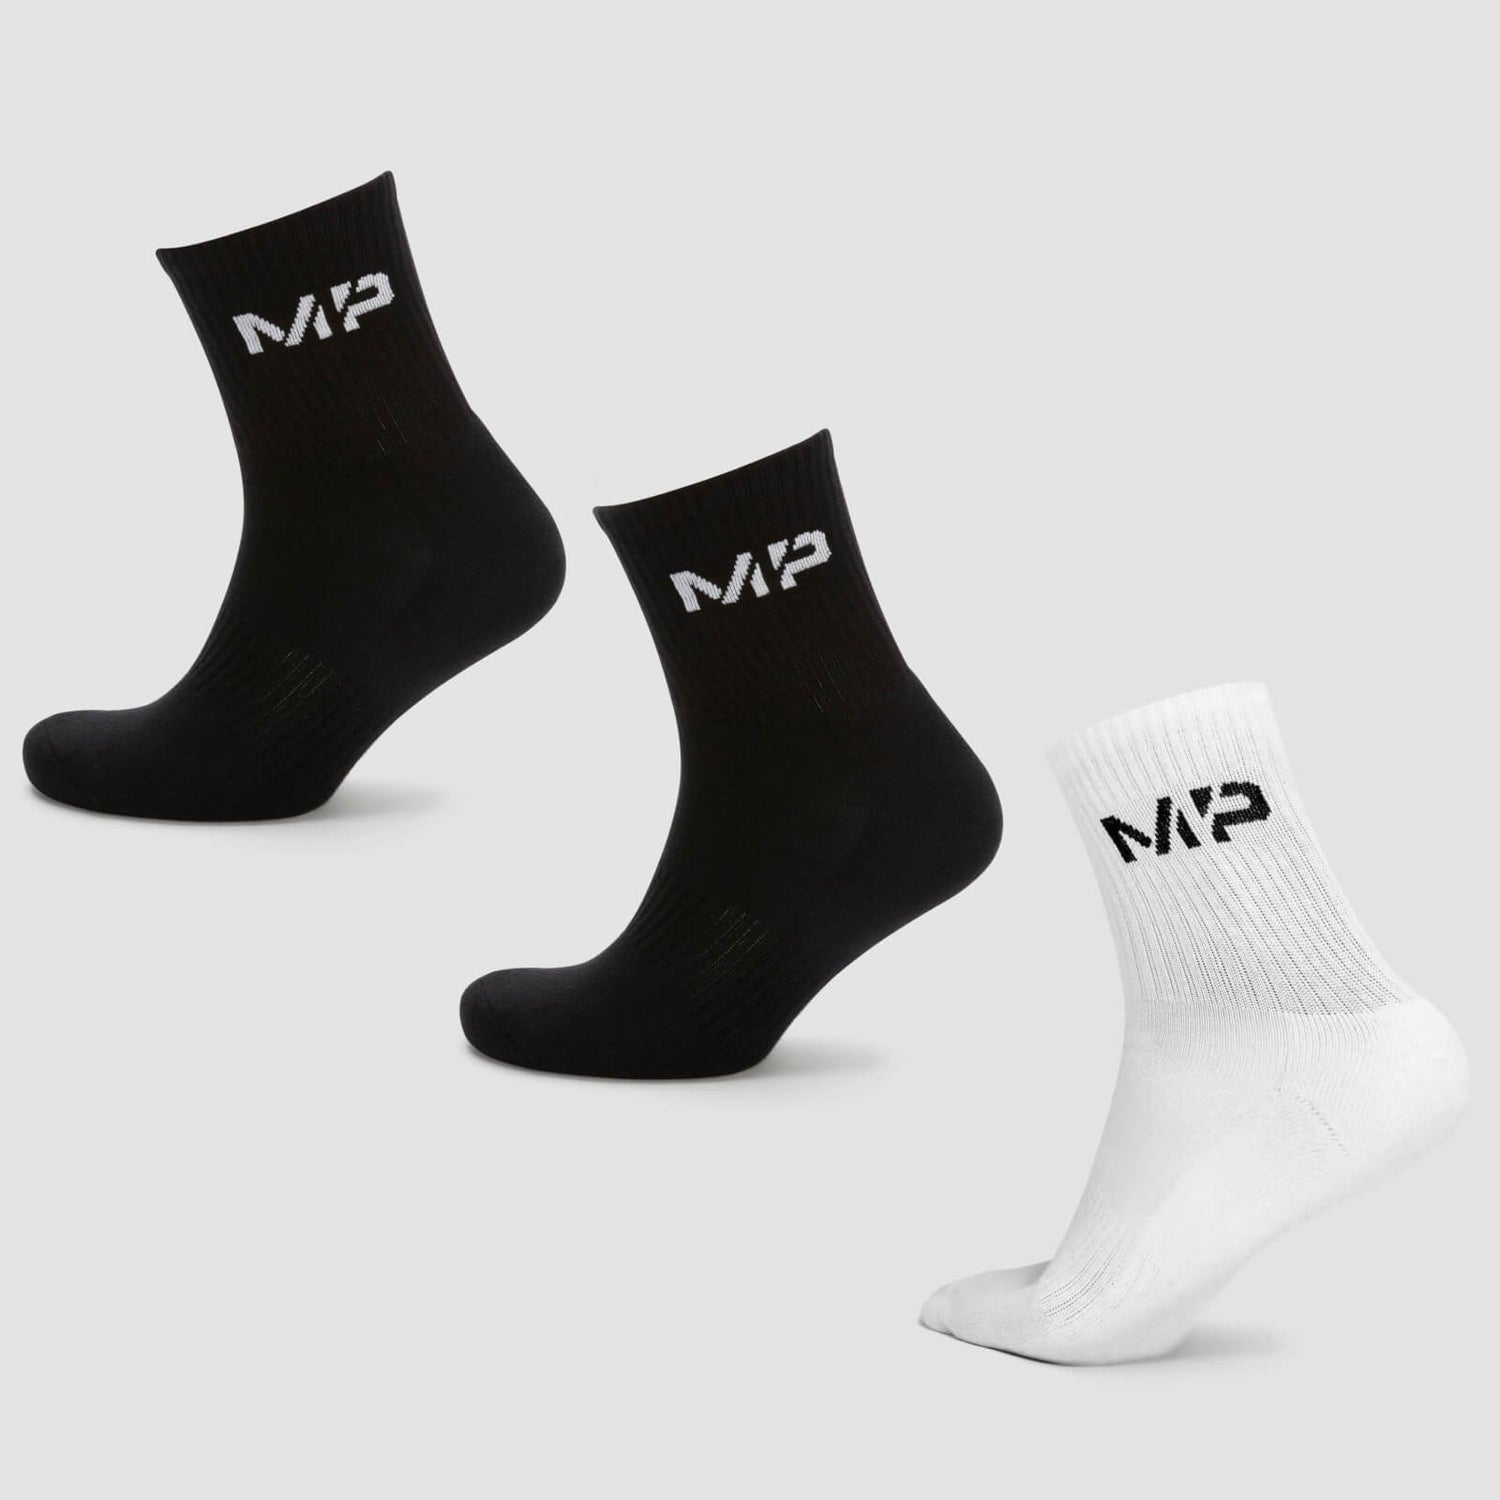 MP Women's Crew Socks (3 Pack) - Black/White - UK 3-6